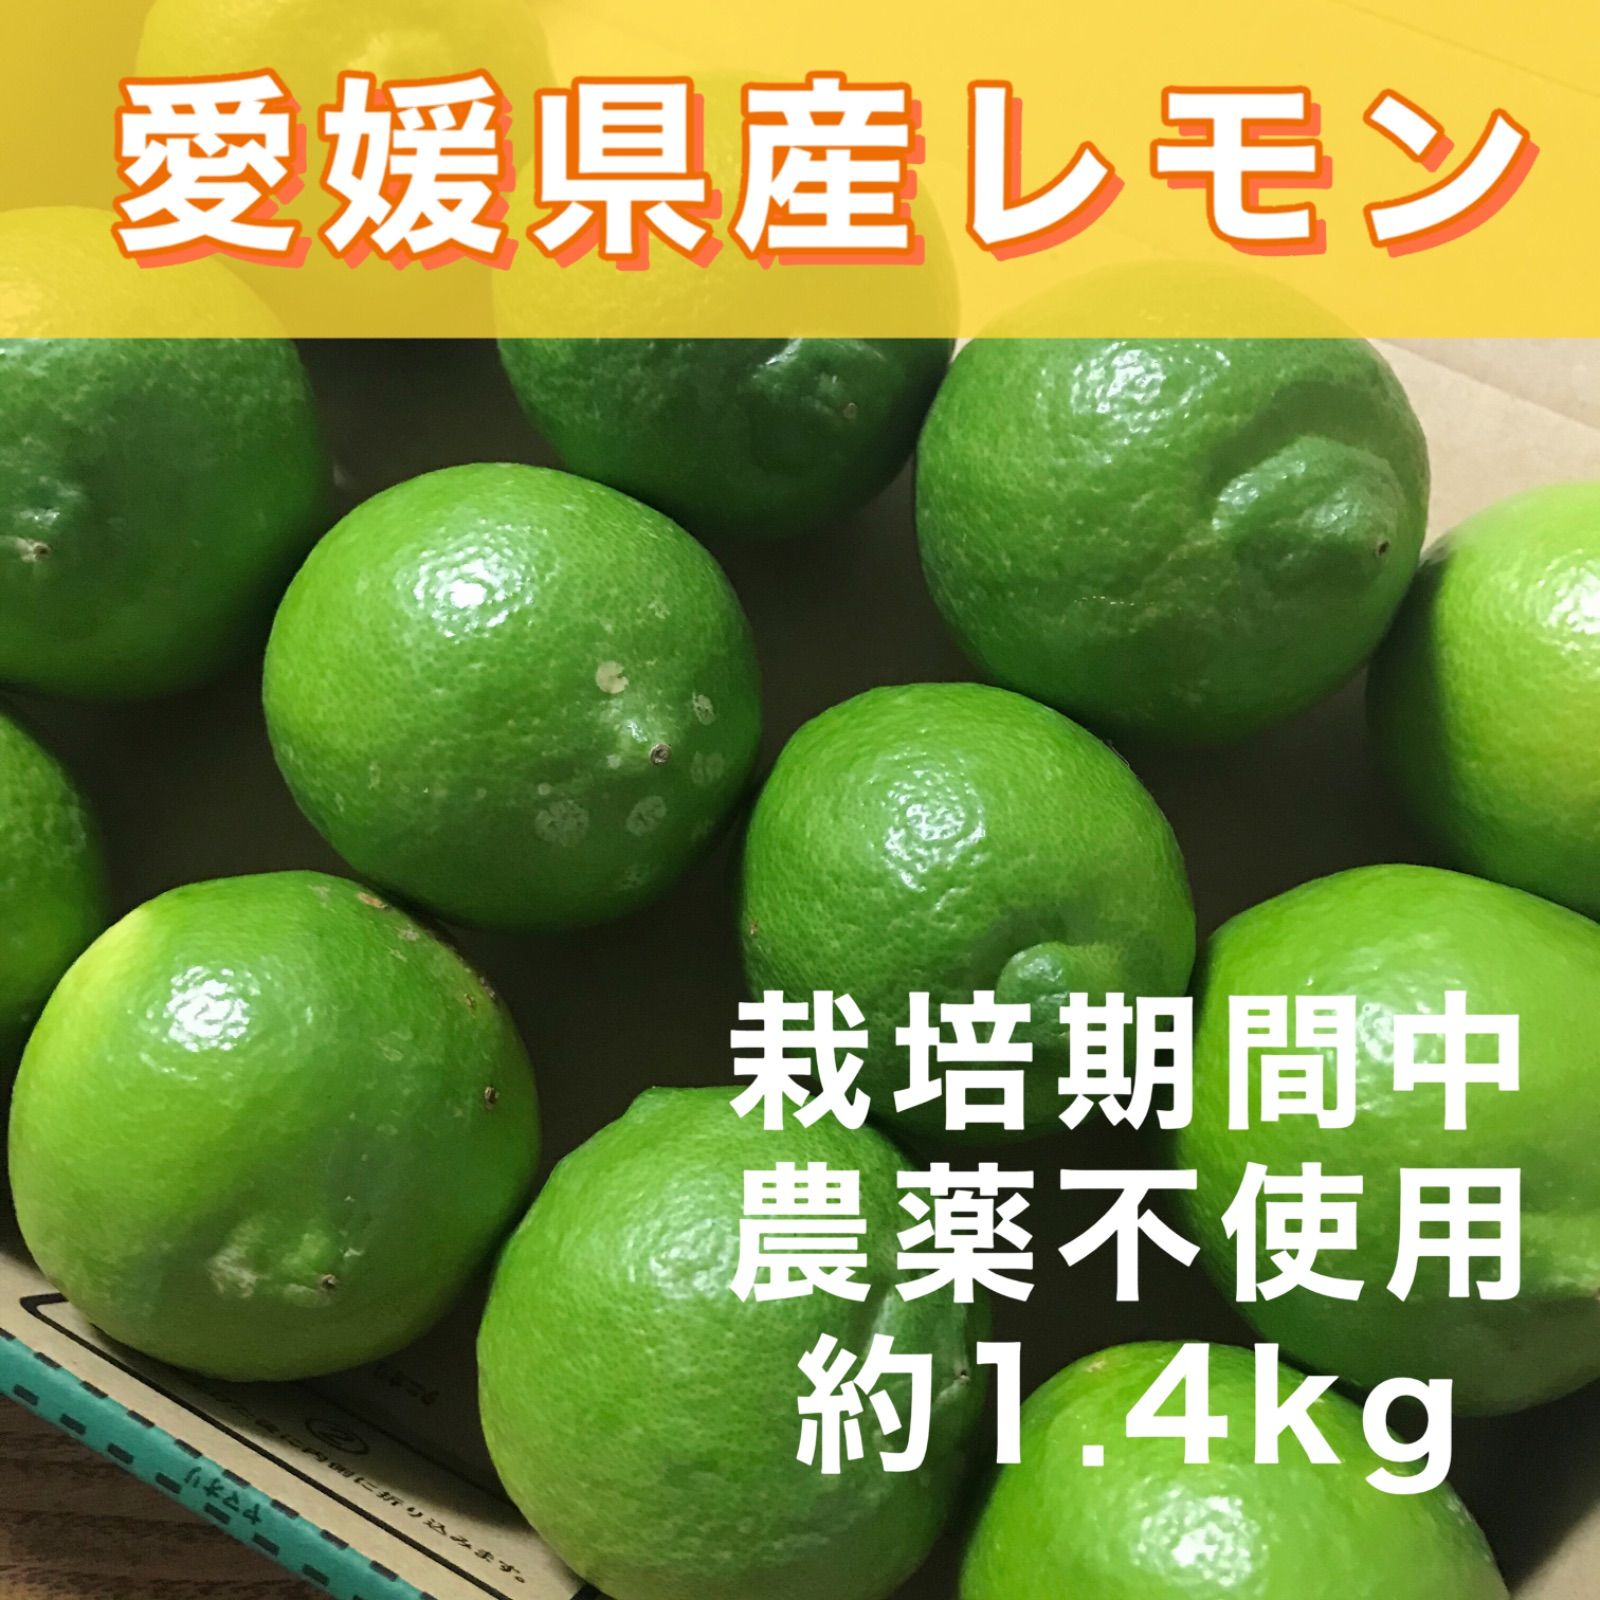 愛媛県産 国産 グリーンレモン 約3kg 農薬不使用 レモン 果物 フルーツ ⑤